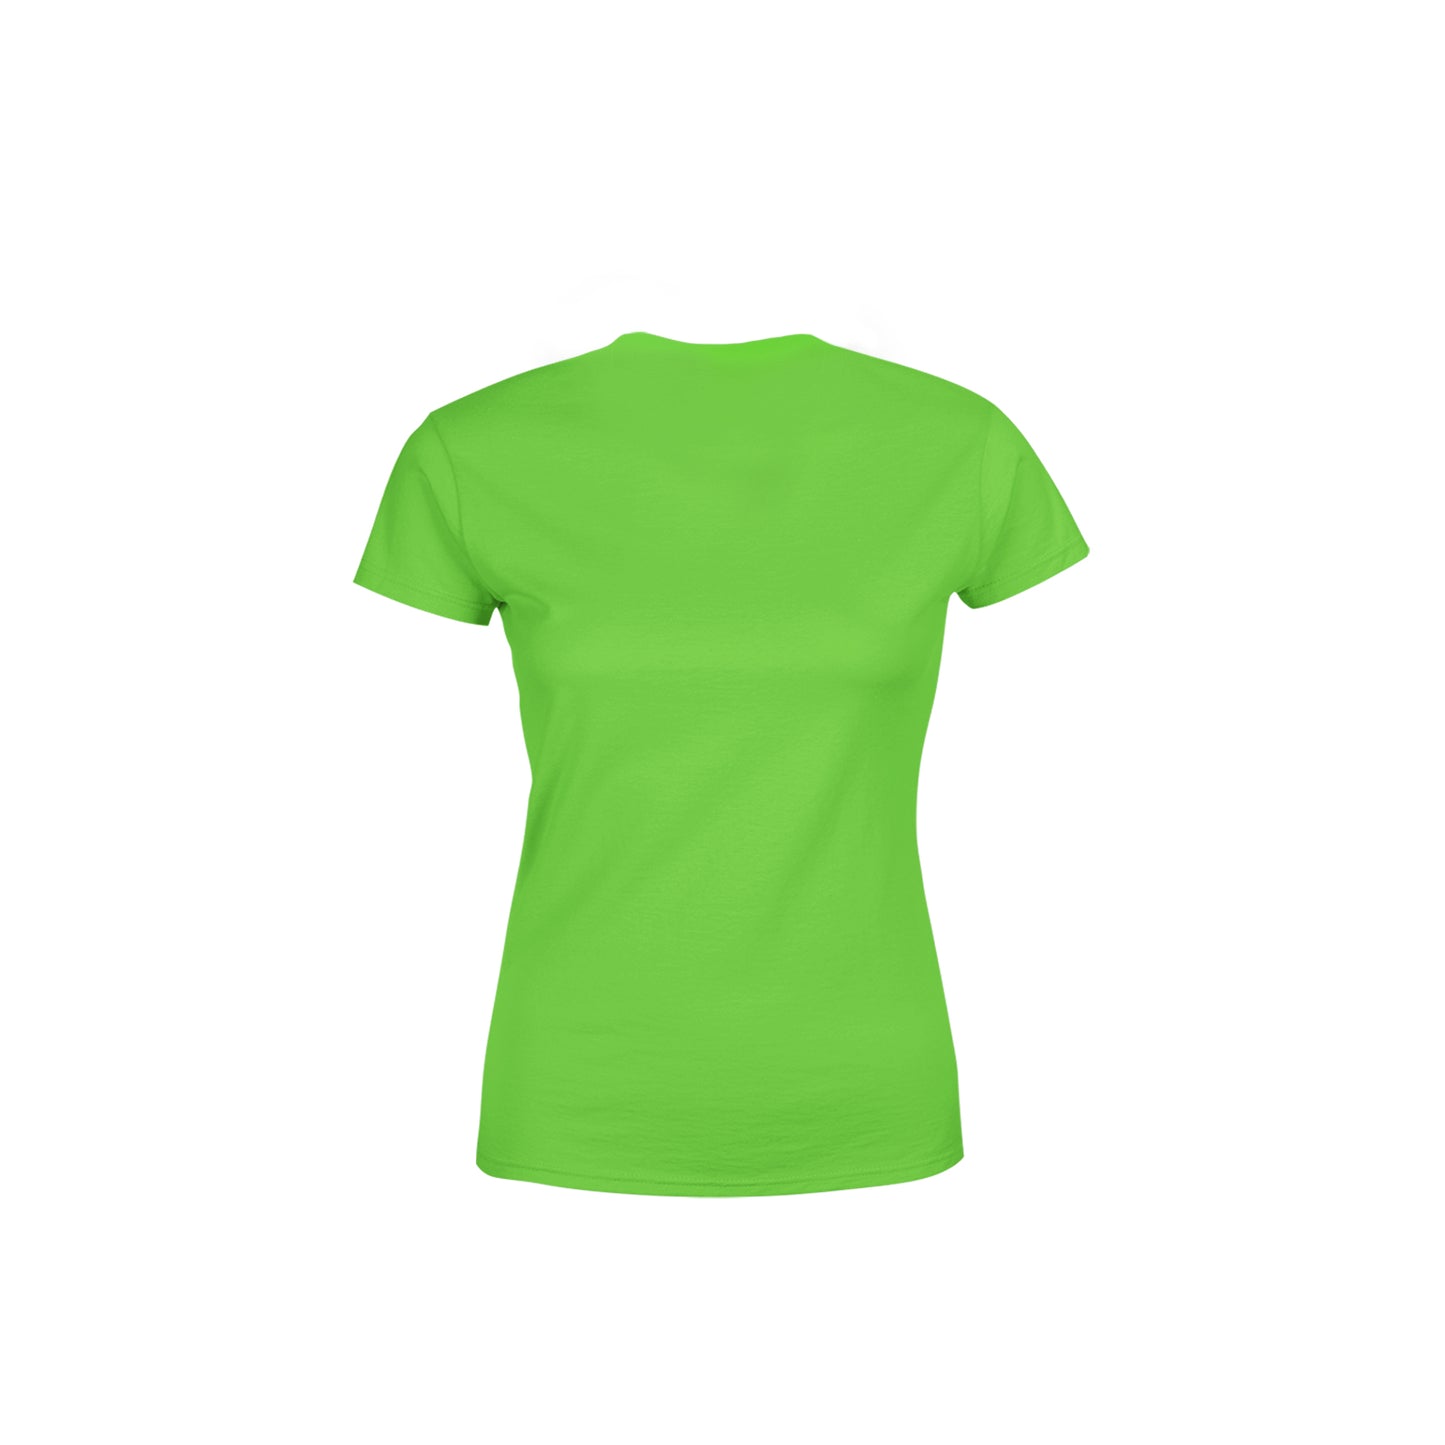 02 Number Women's T-Shirt (Liril Green)